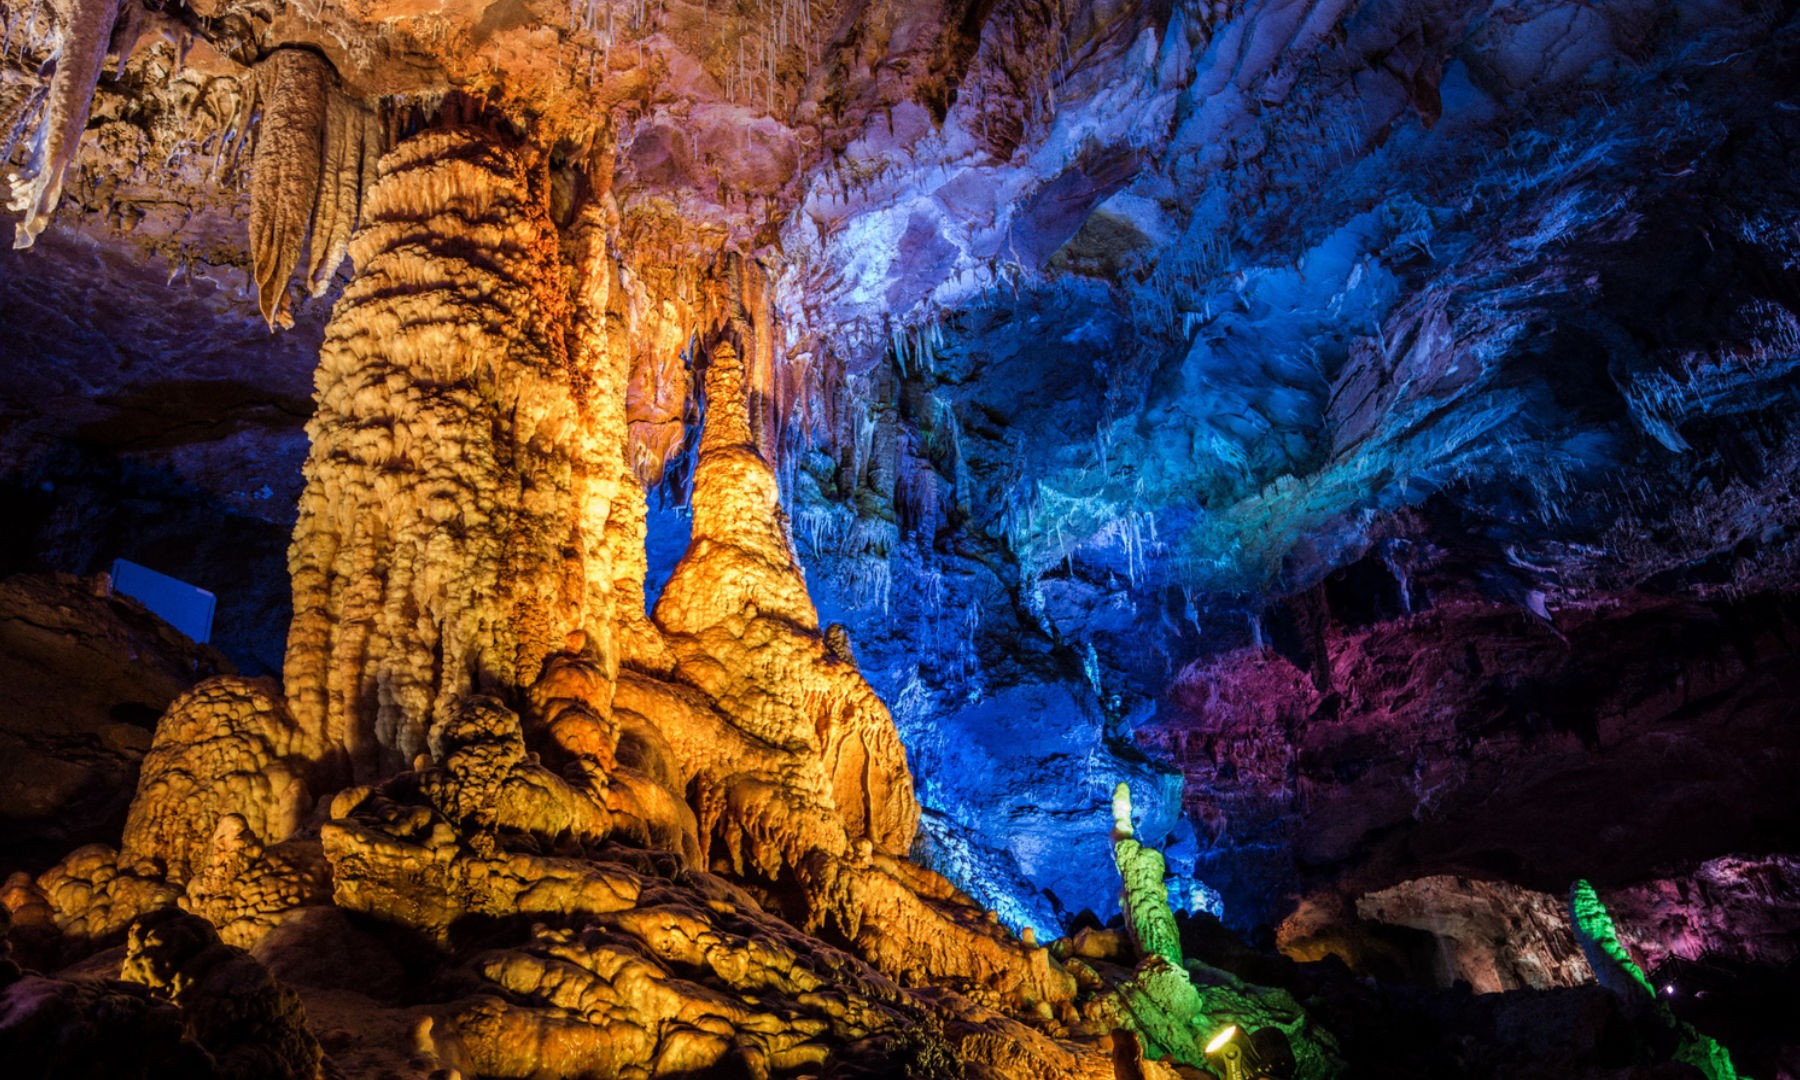 Caverna Shennong traz indícios da época do colapso da cultura Liangzhu há cerca de 4,3 mil anos  (Foto: Haiwei Zhang)